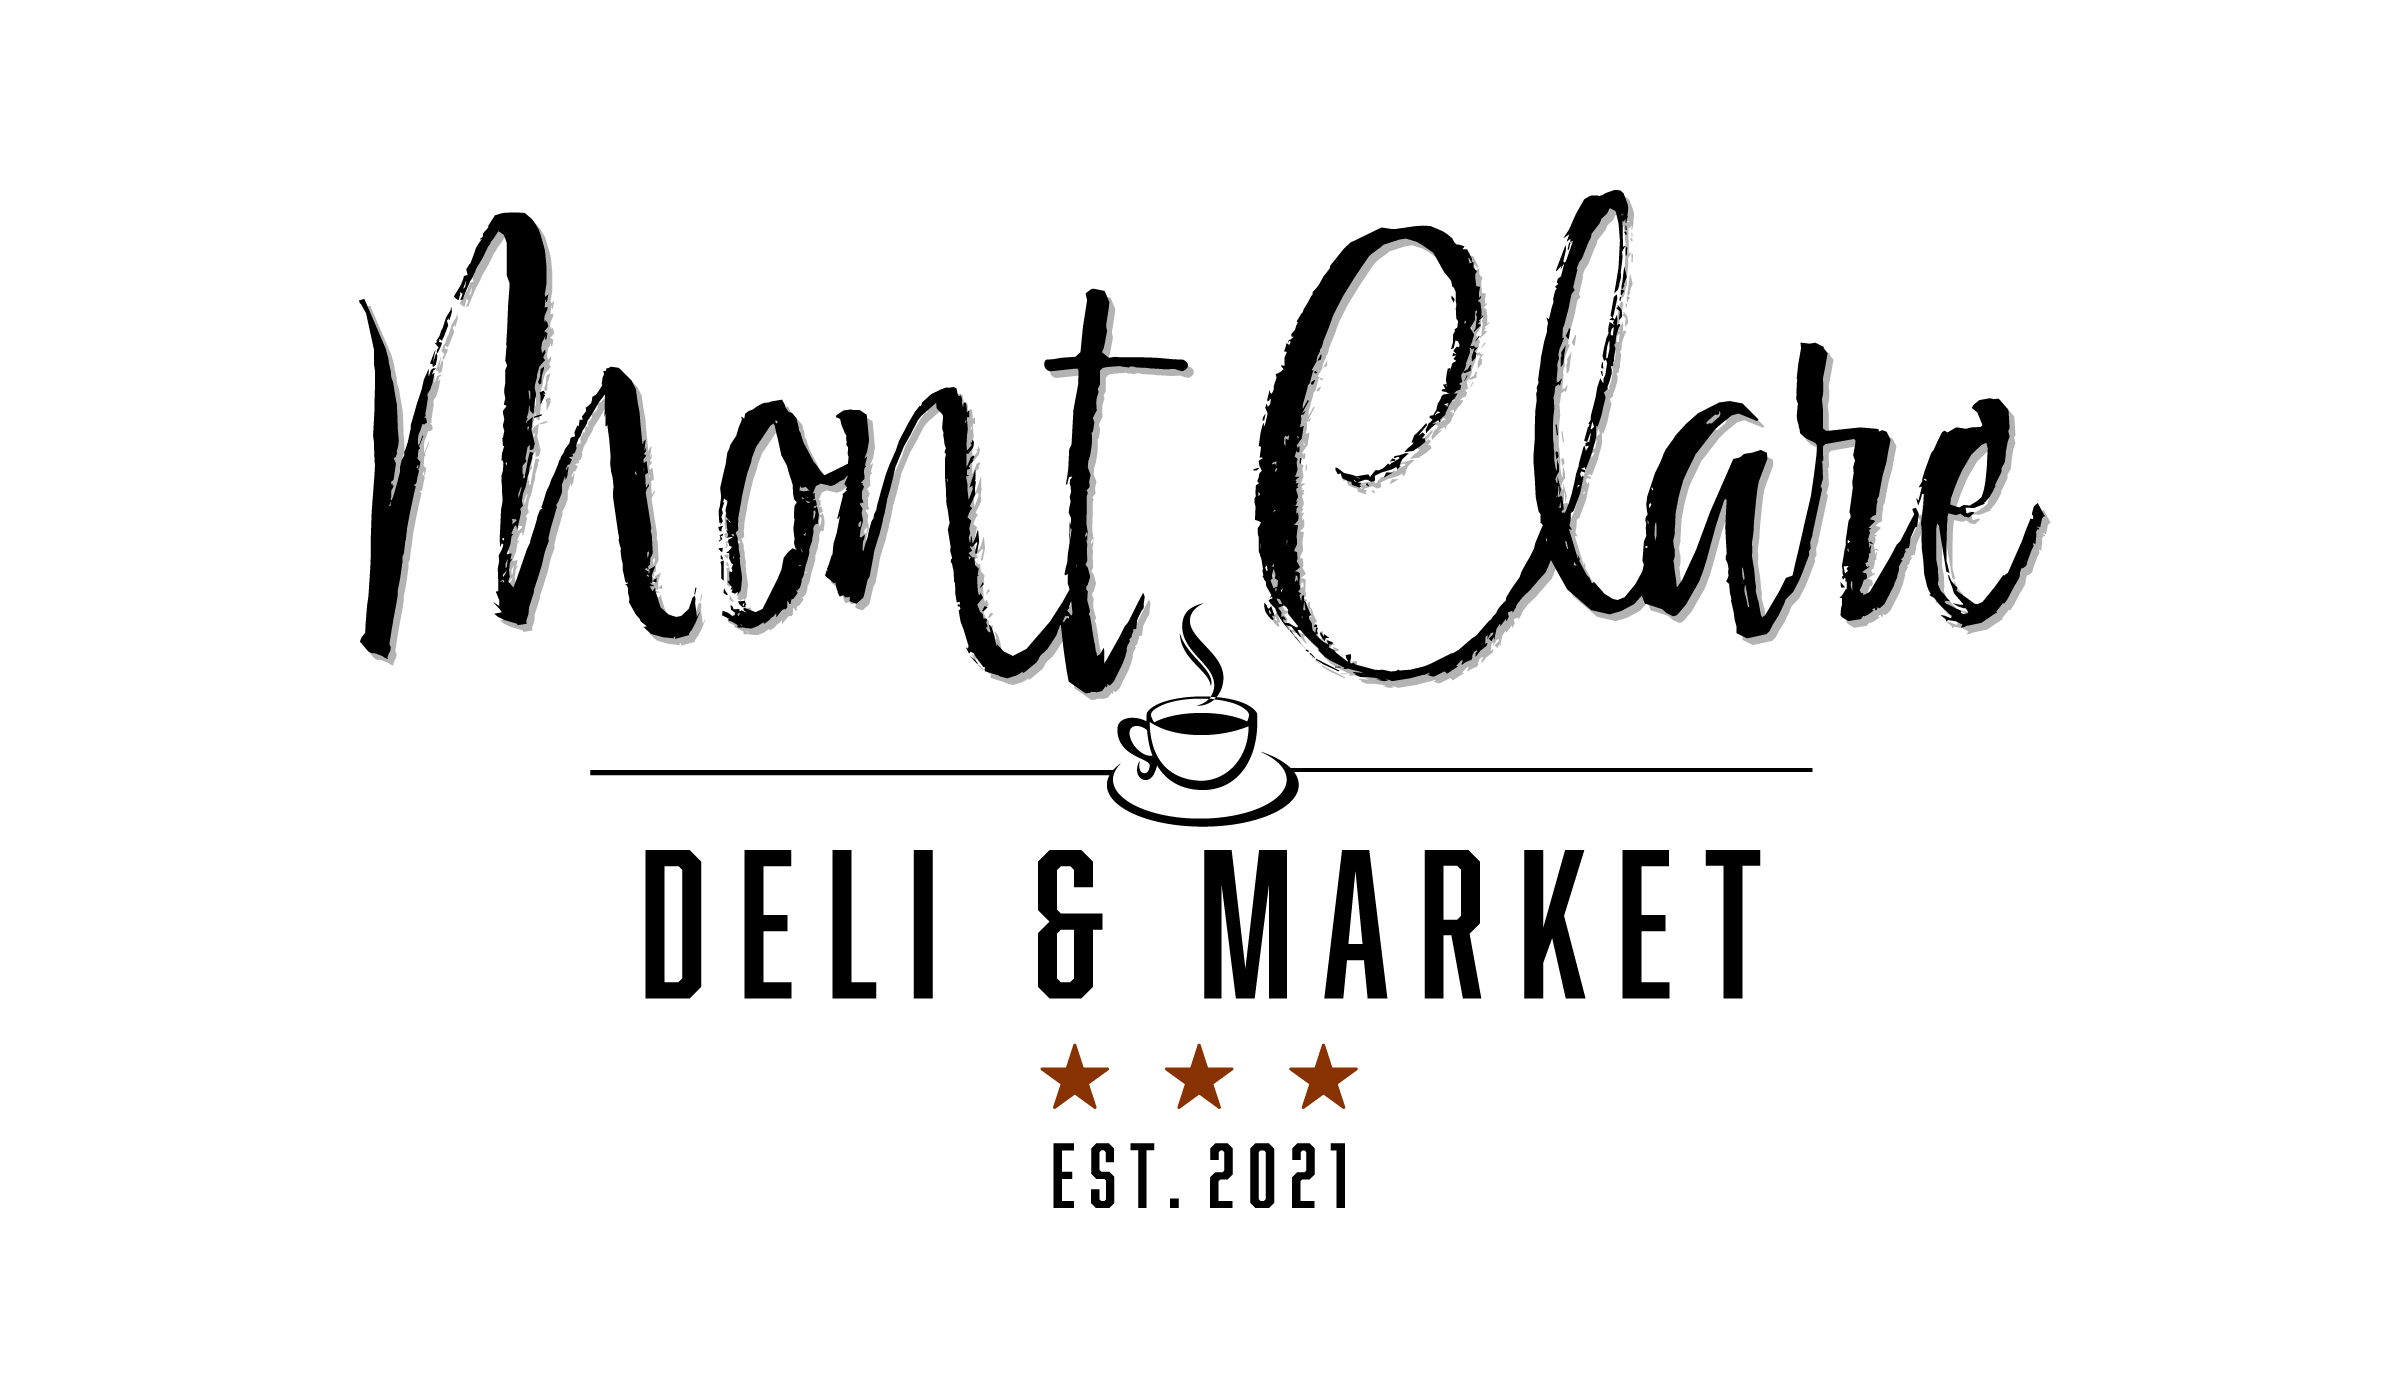 mont-clare-deli--market-large.png